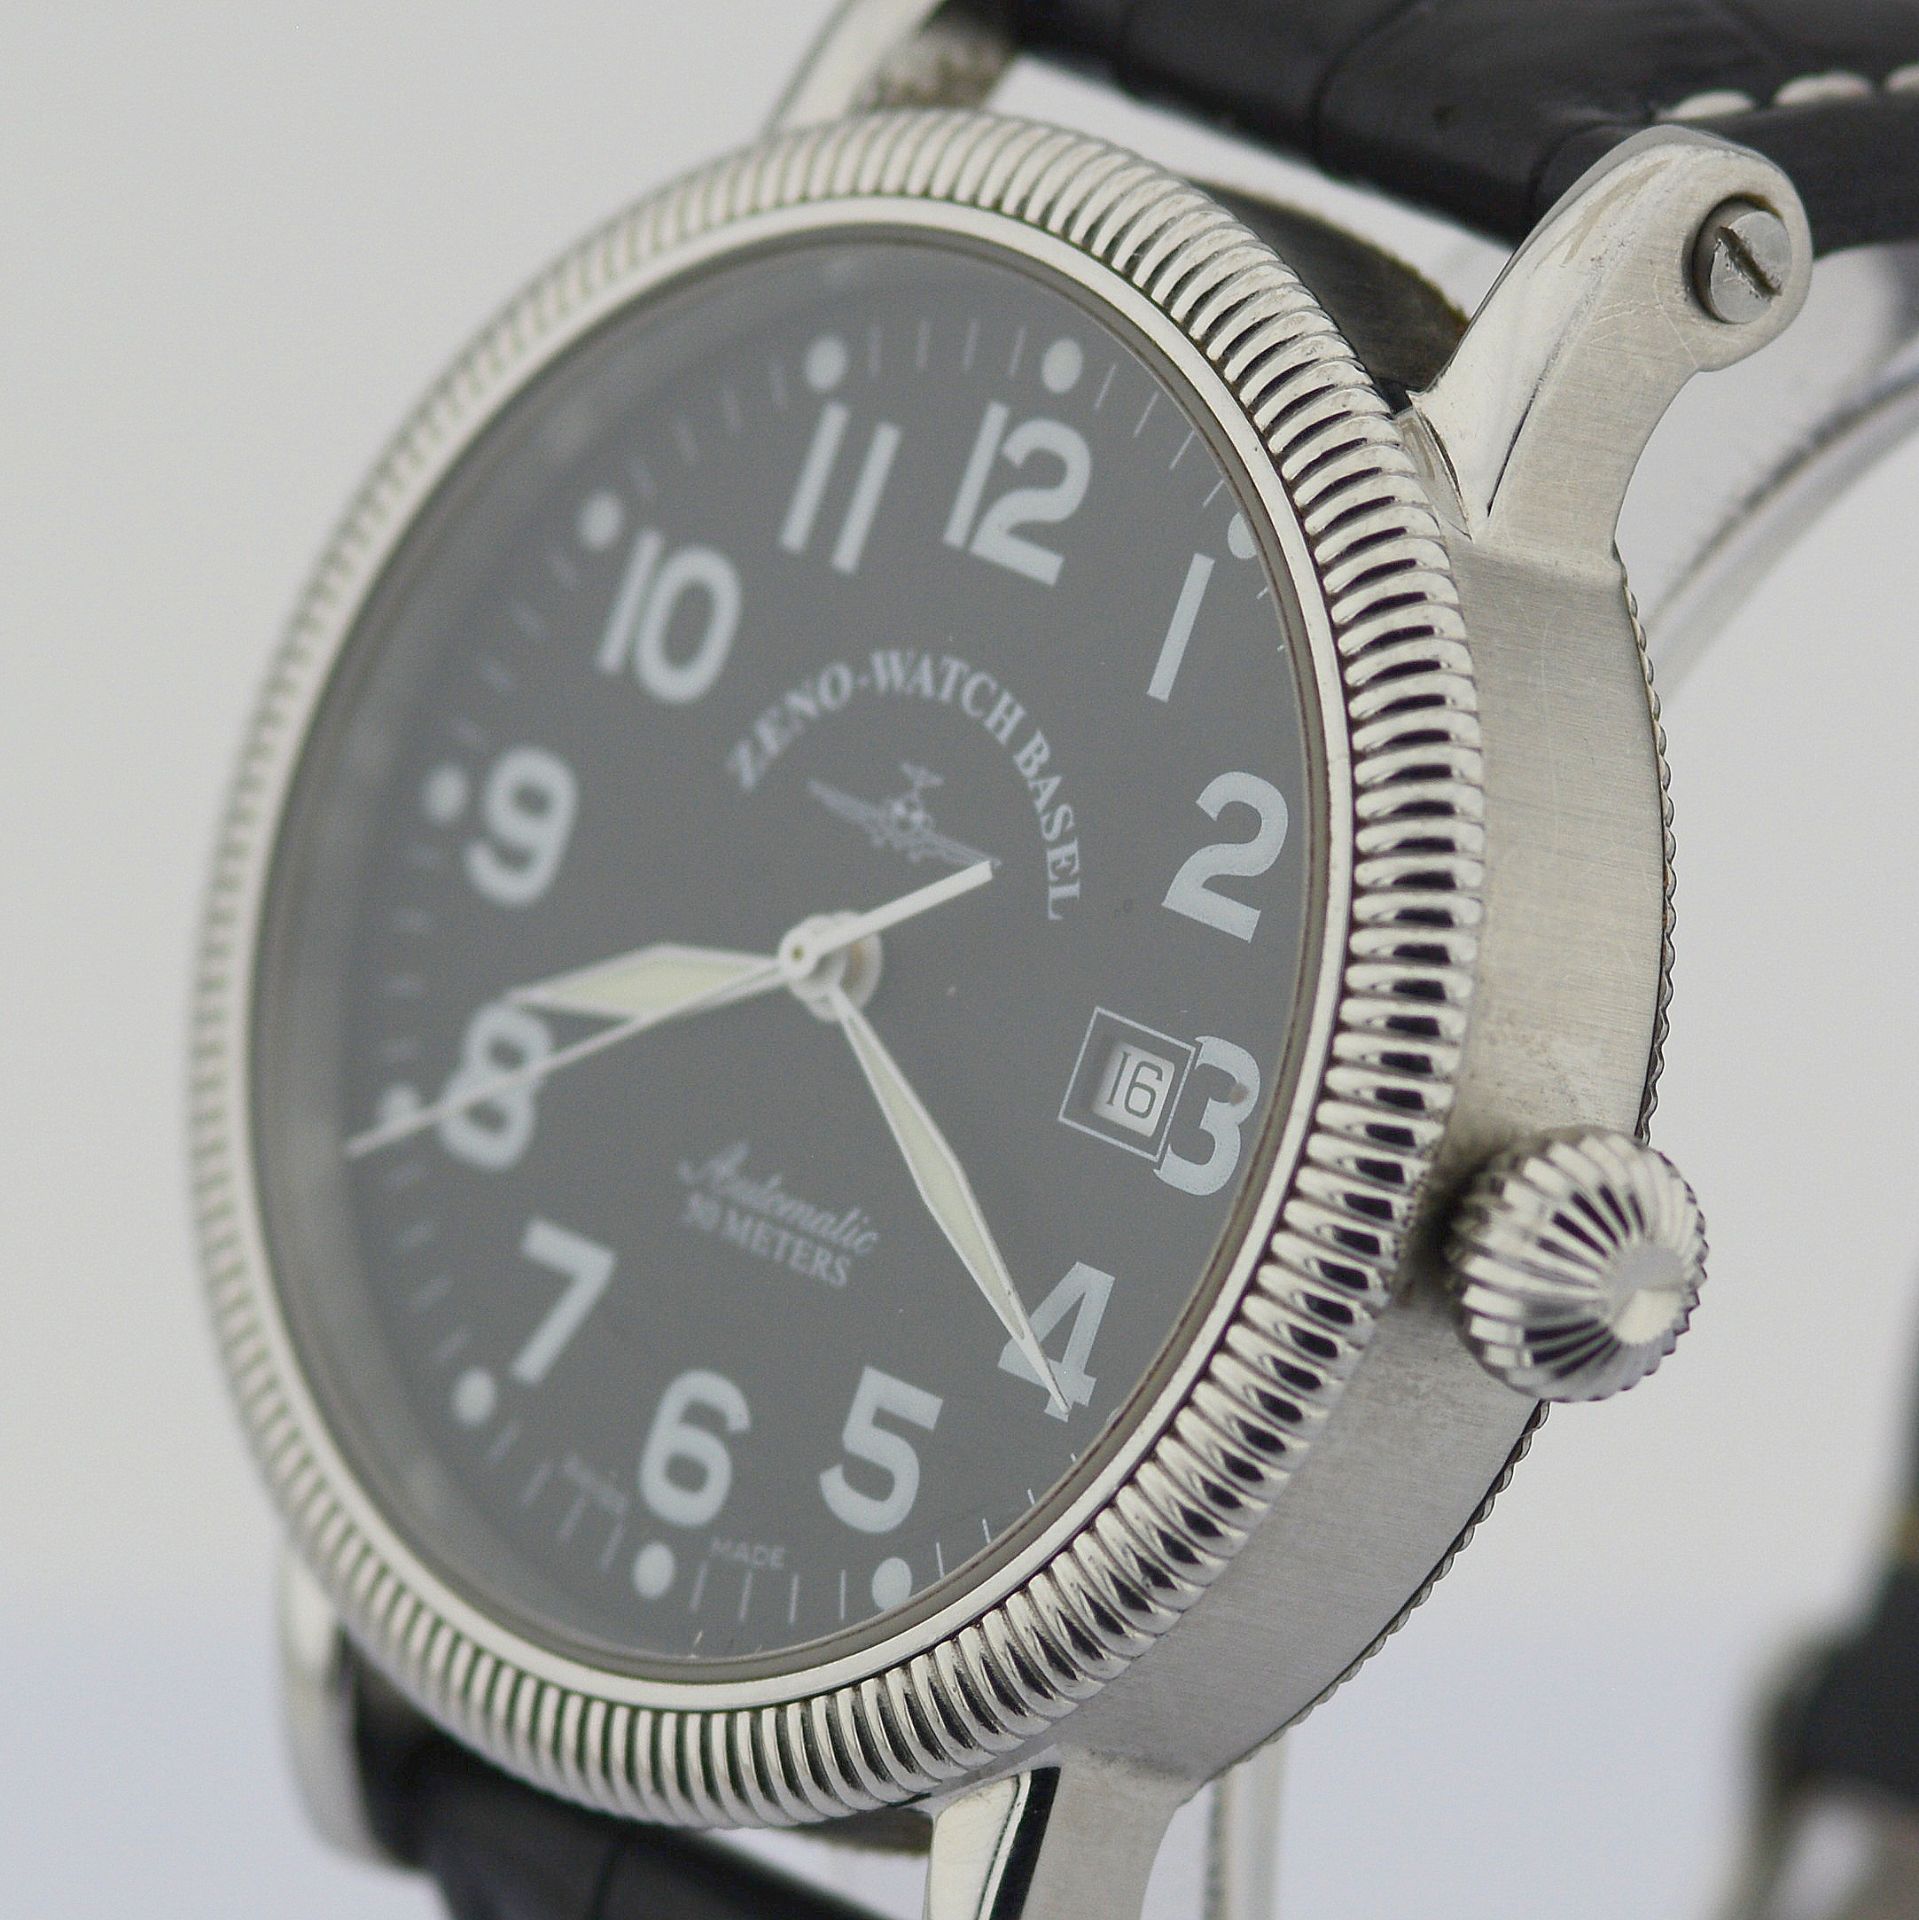 Zeno-Watch Basel / Automatic Date Steel - Gentlmen's Steel Wrist Watch - Image 5 of 10